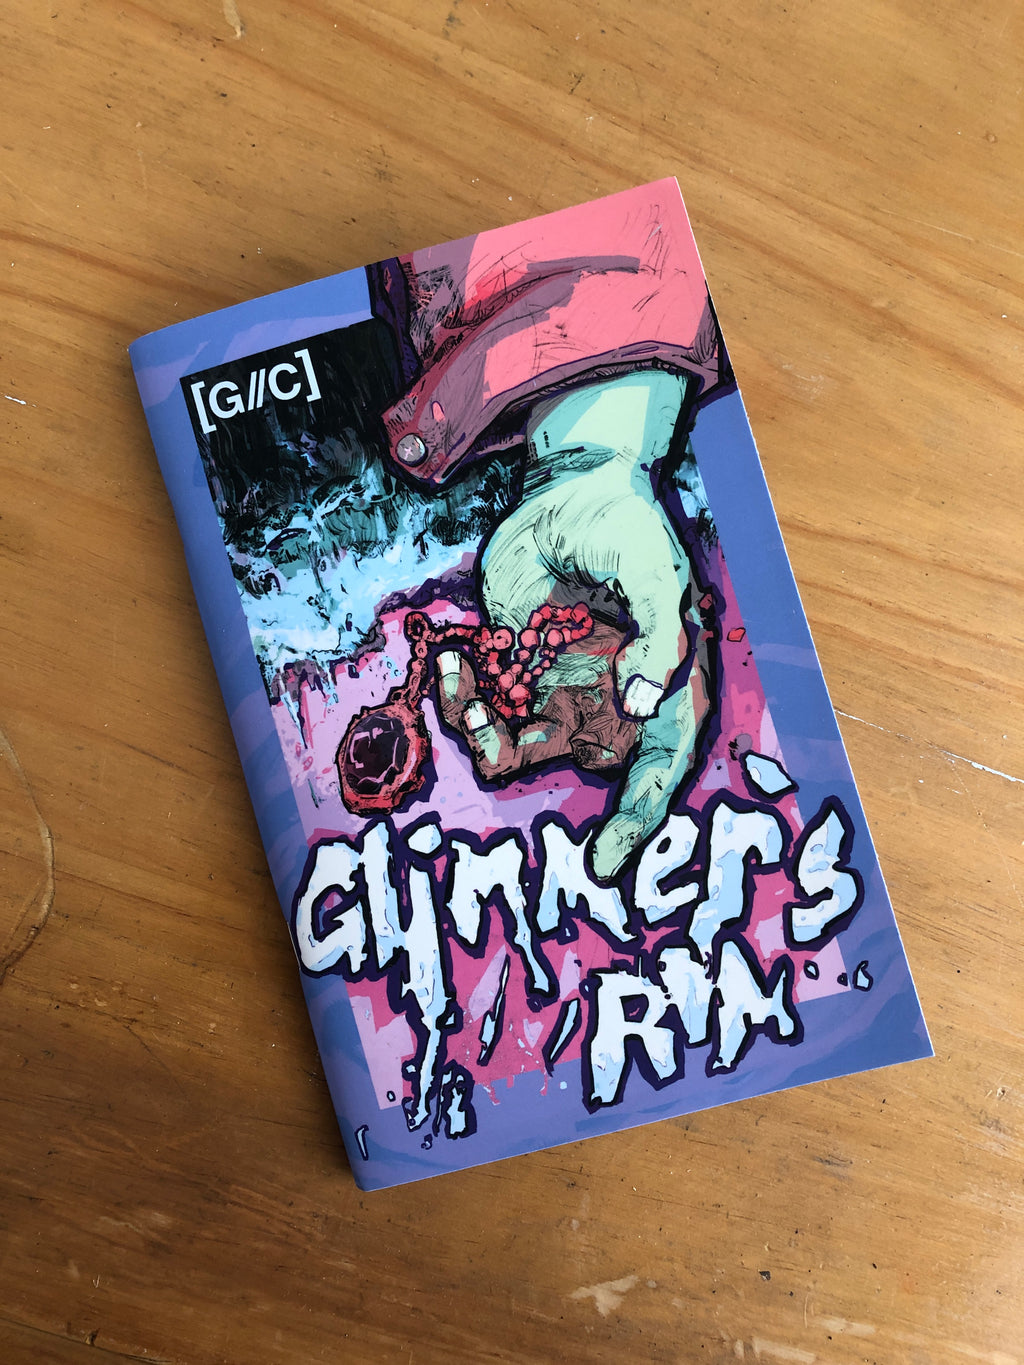 Glimmer’s Rim